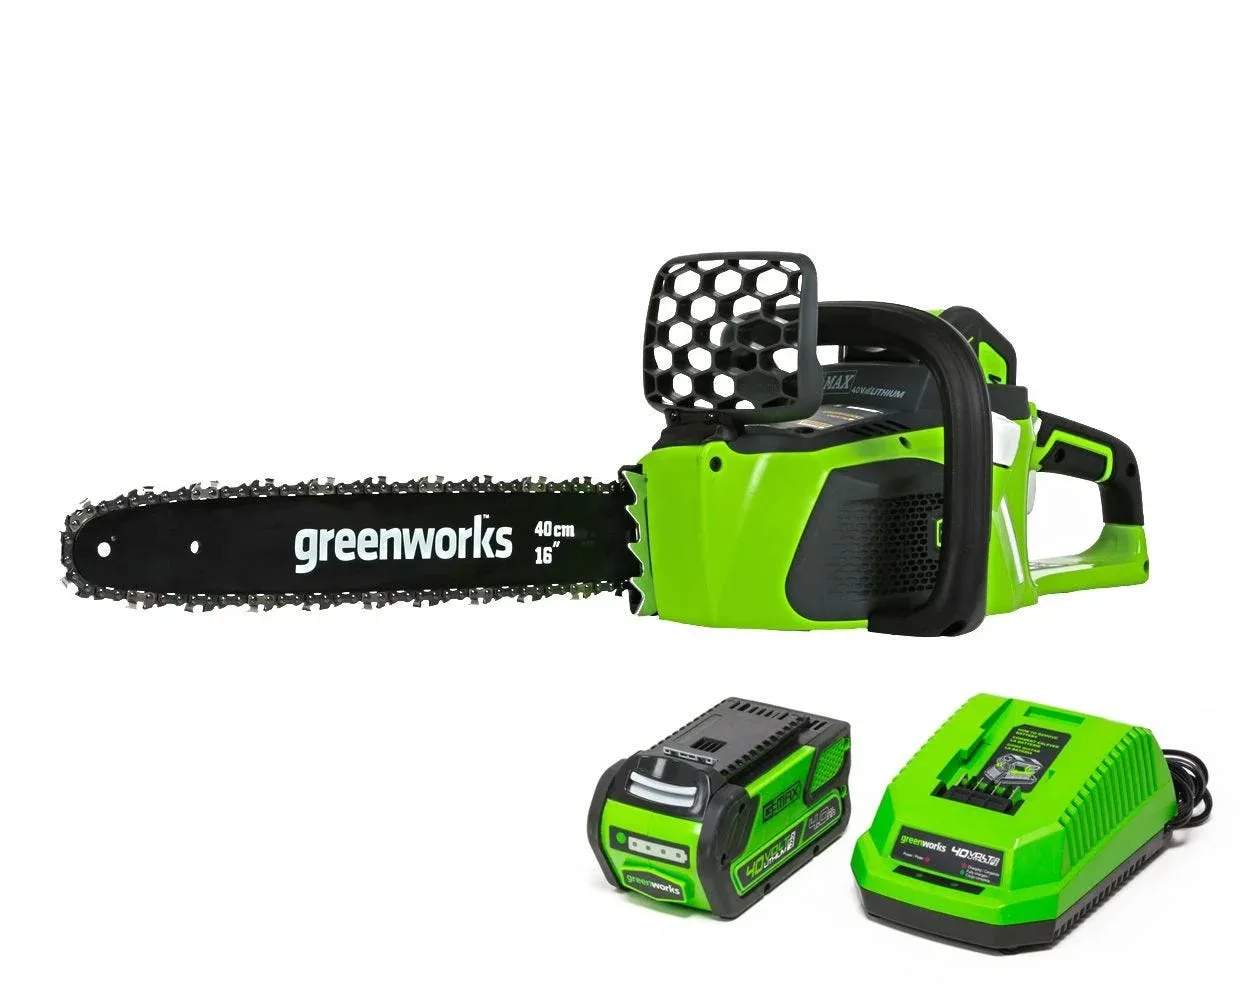 

Беспроводная бесщеточная бензопила Greenworks, садовый инструмент для подрезки живой изгороди, 40 в, 16 дюймов, аккумулятор 4,0 Ач, зарядное устройство 20312